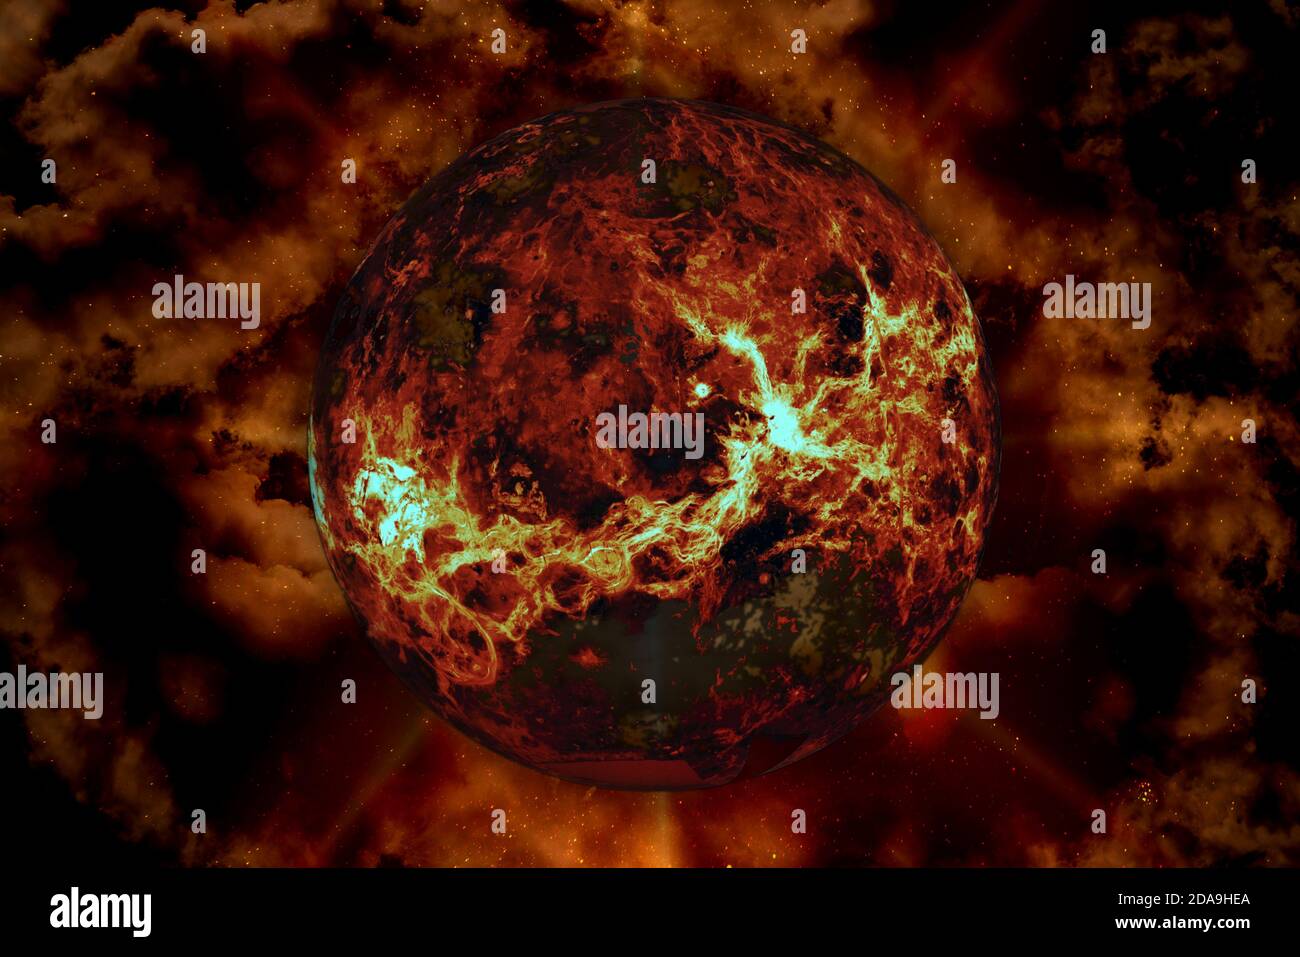 Riesige Sonne in Galaxie Plasmawolken. Elemente dieses Bildes, die von der NASA eingerichtet wurden. Stockfoto